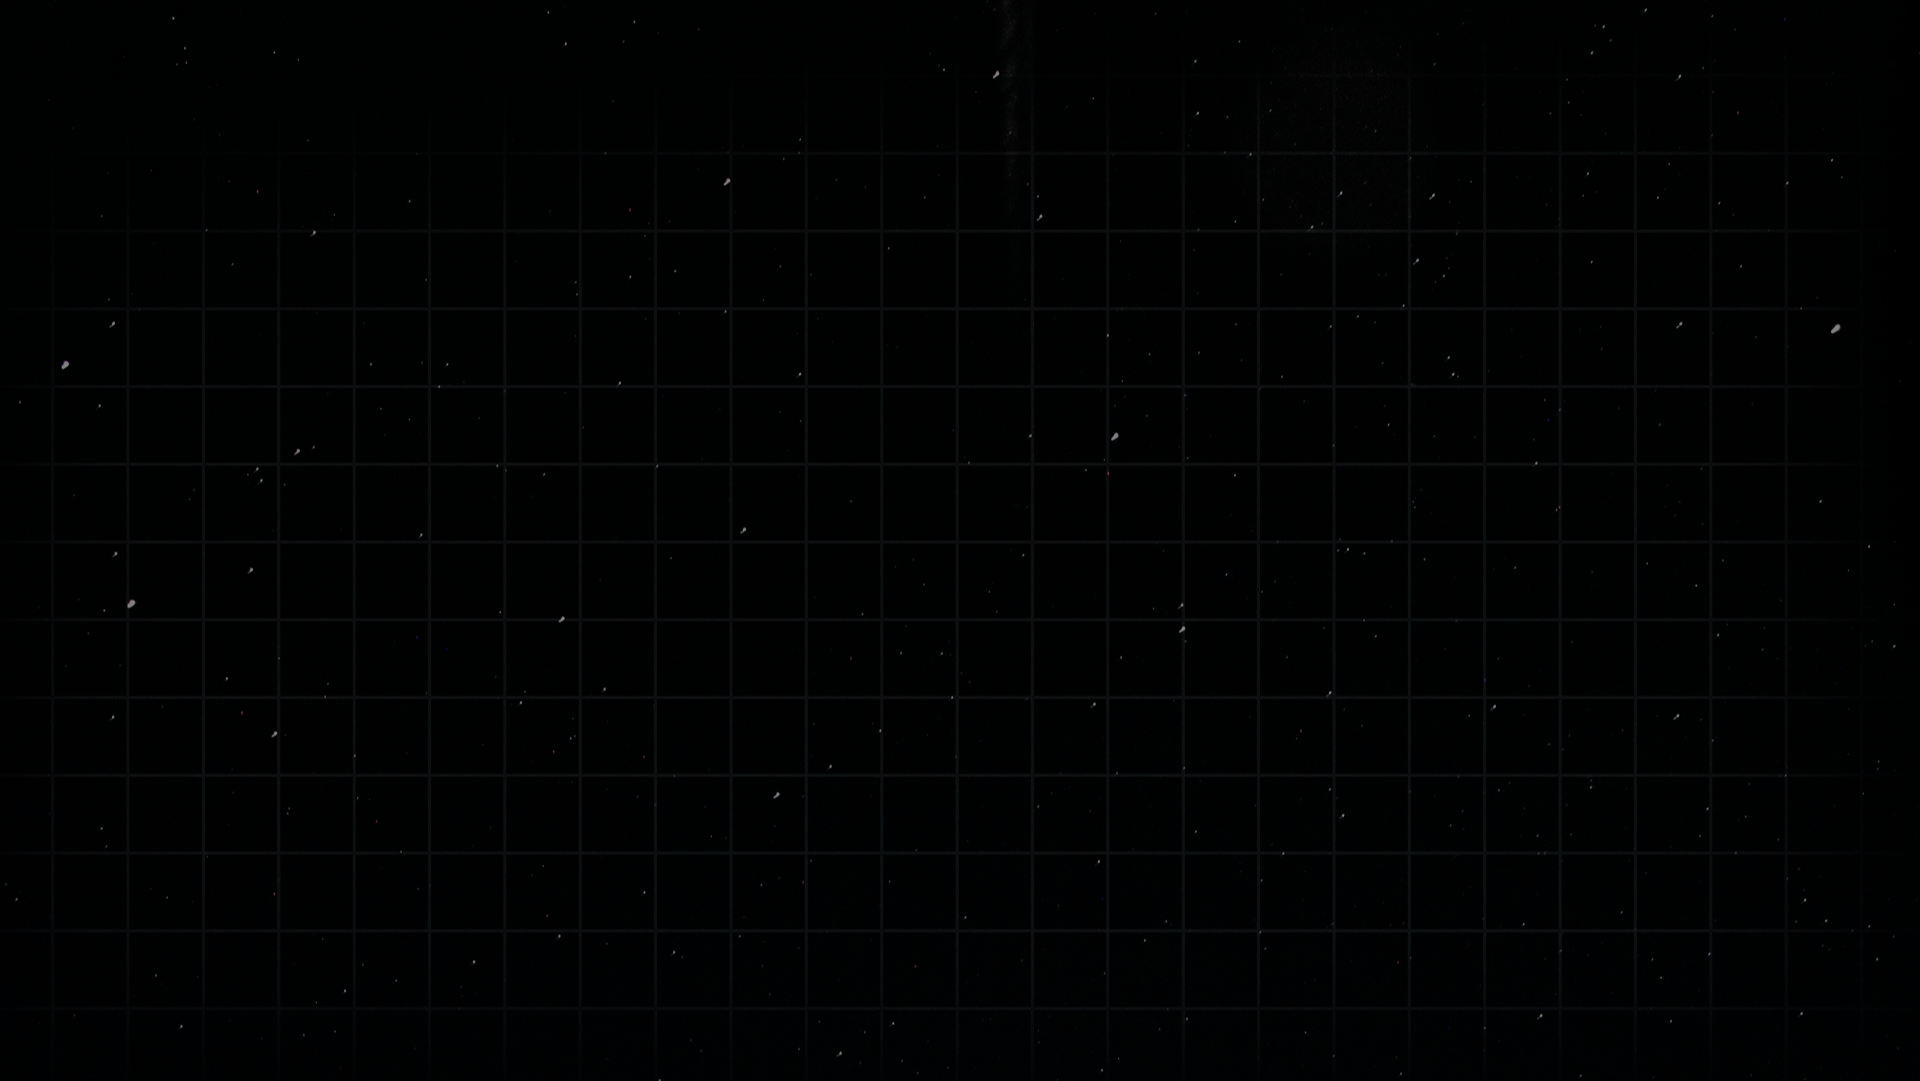 Imagem de fundo de uma grade cinza sobre um fundo espacial.